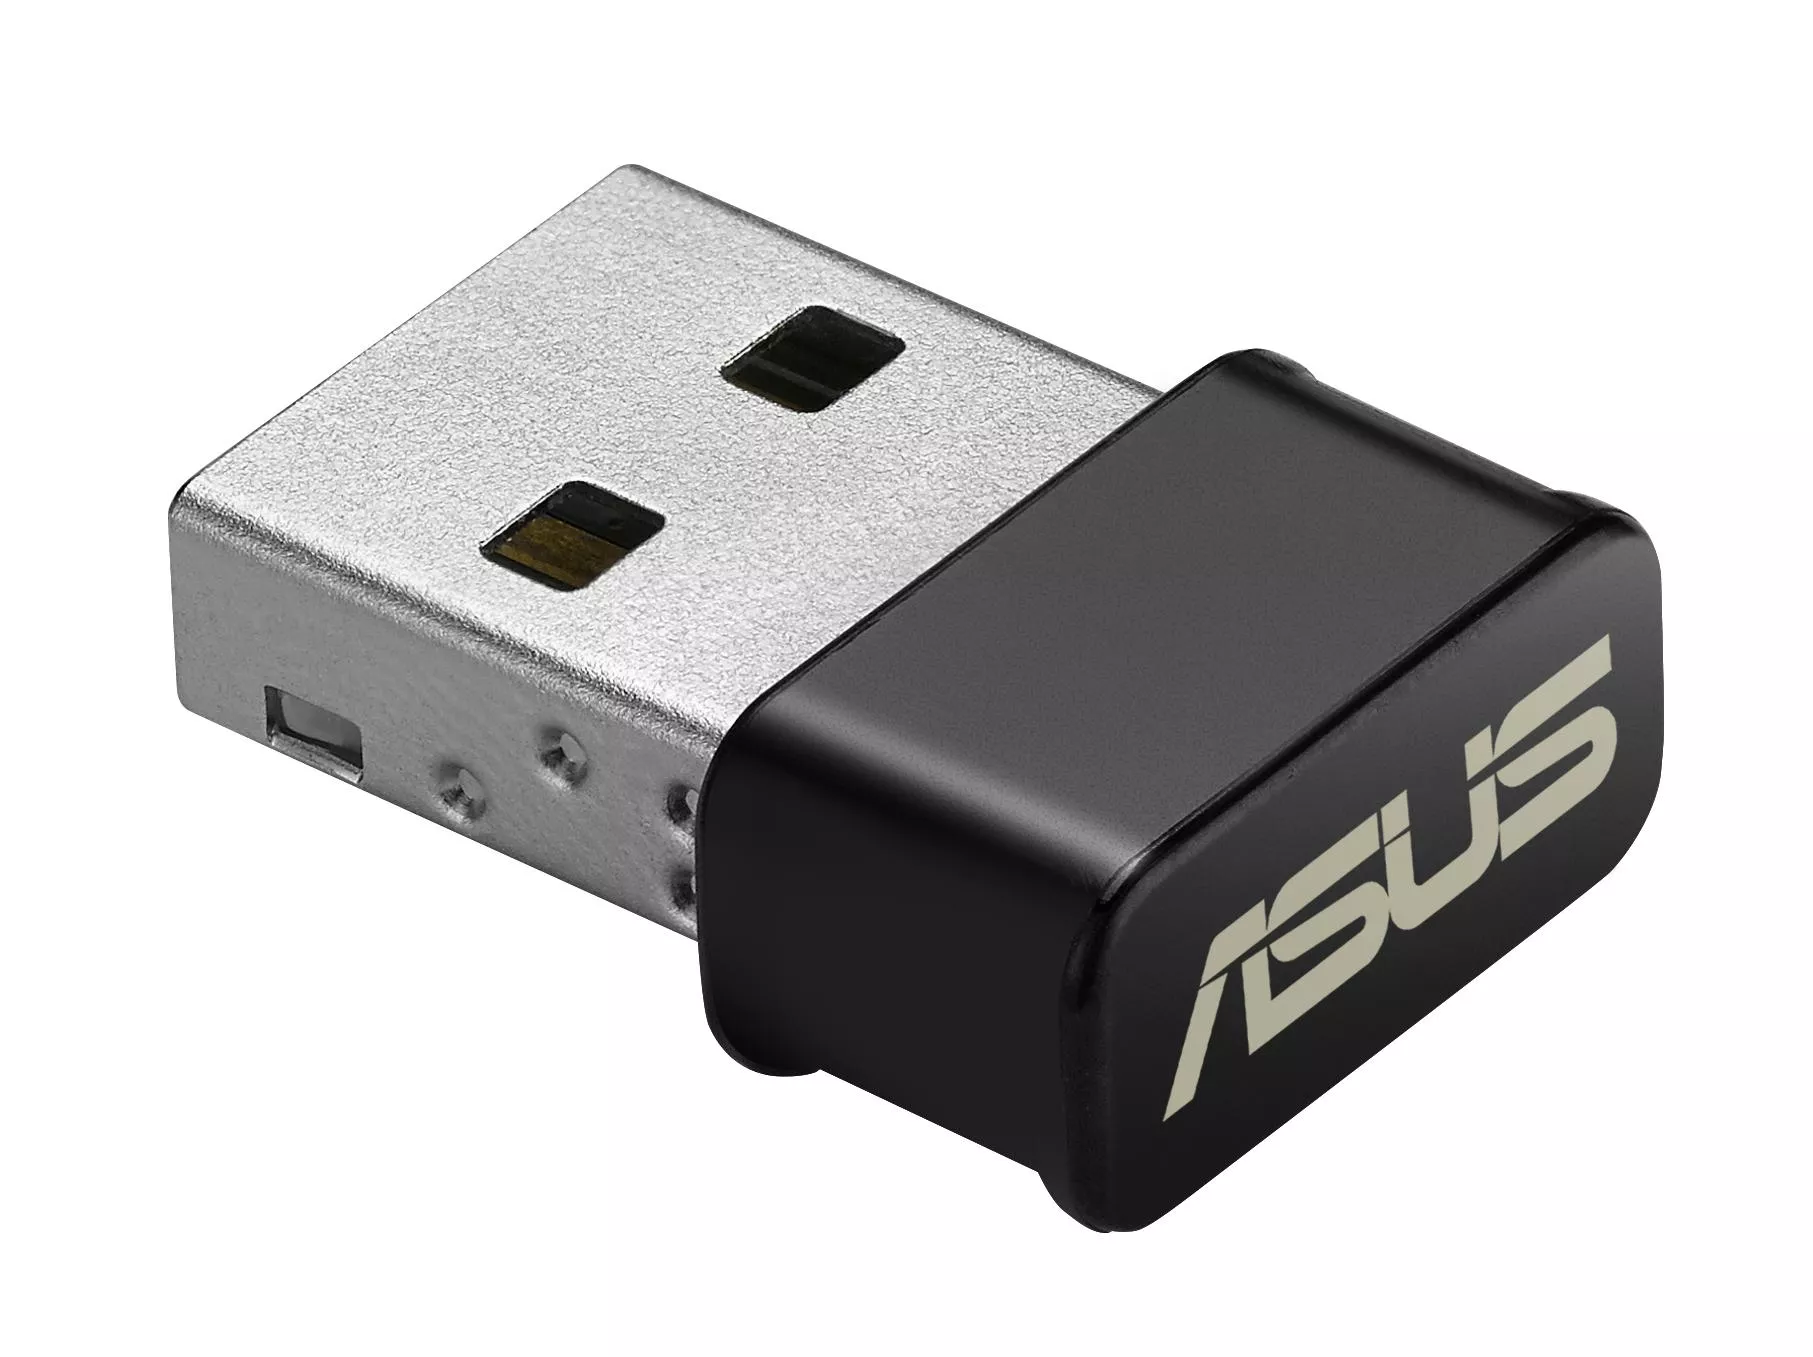 Achat ASUS USB-AC53 Nano - 4712900519105